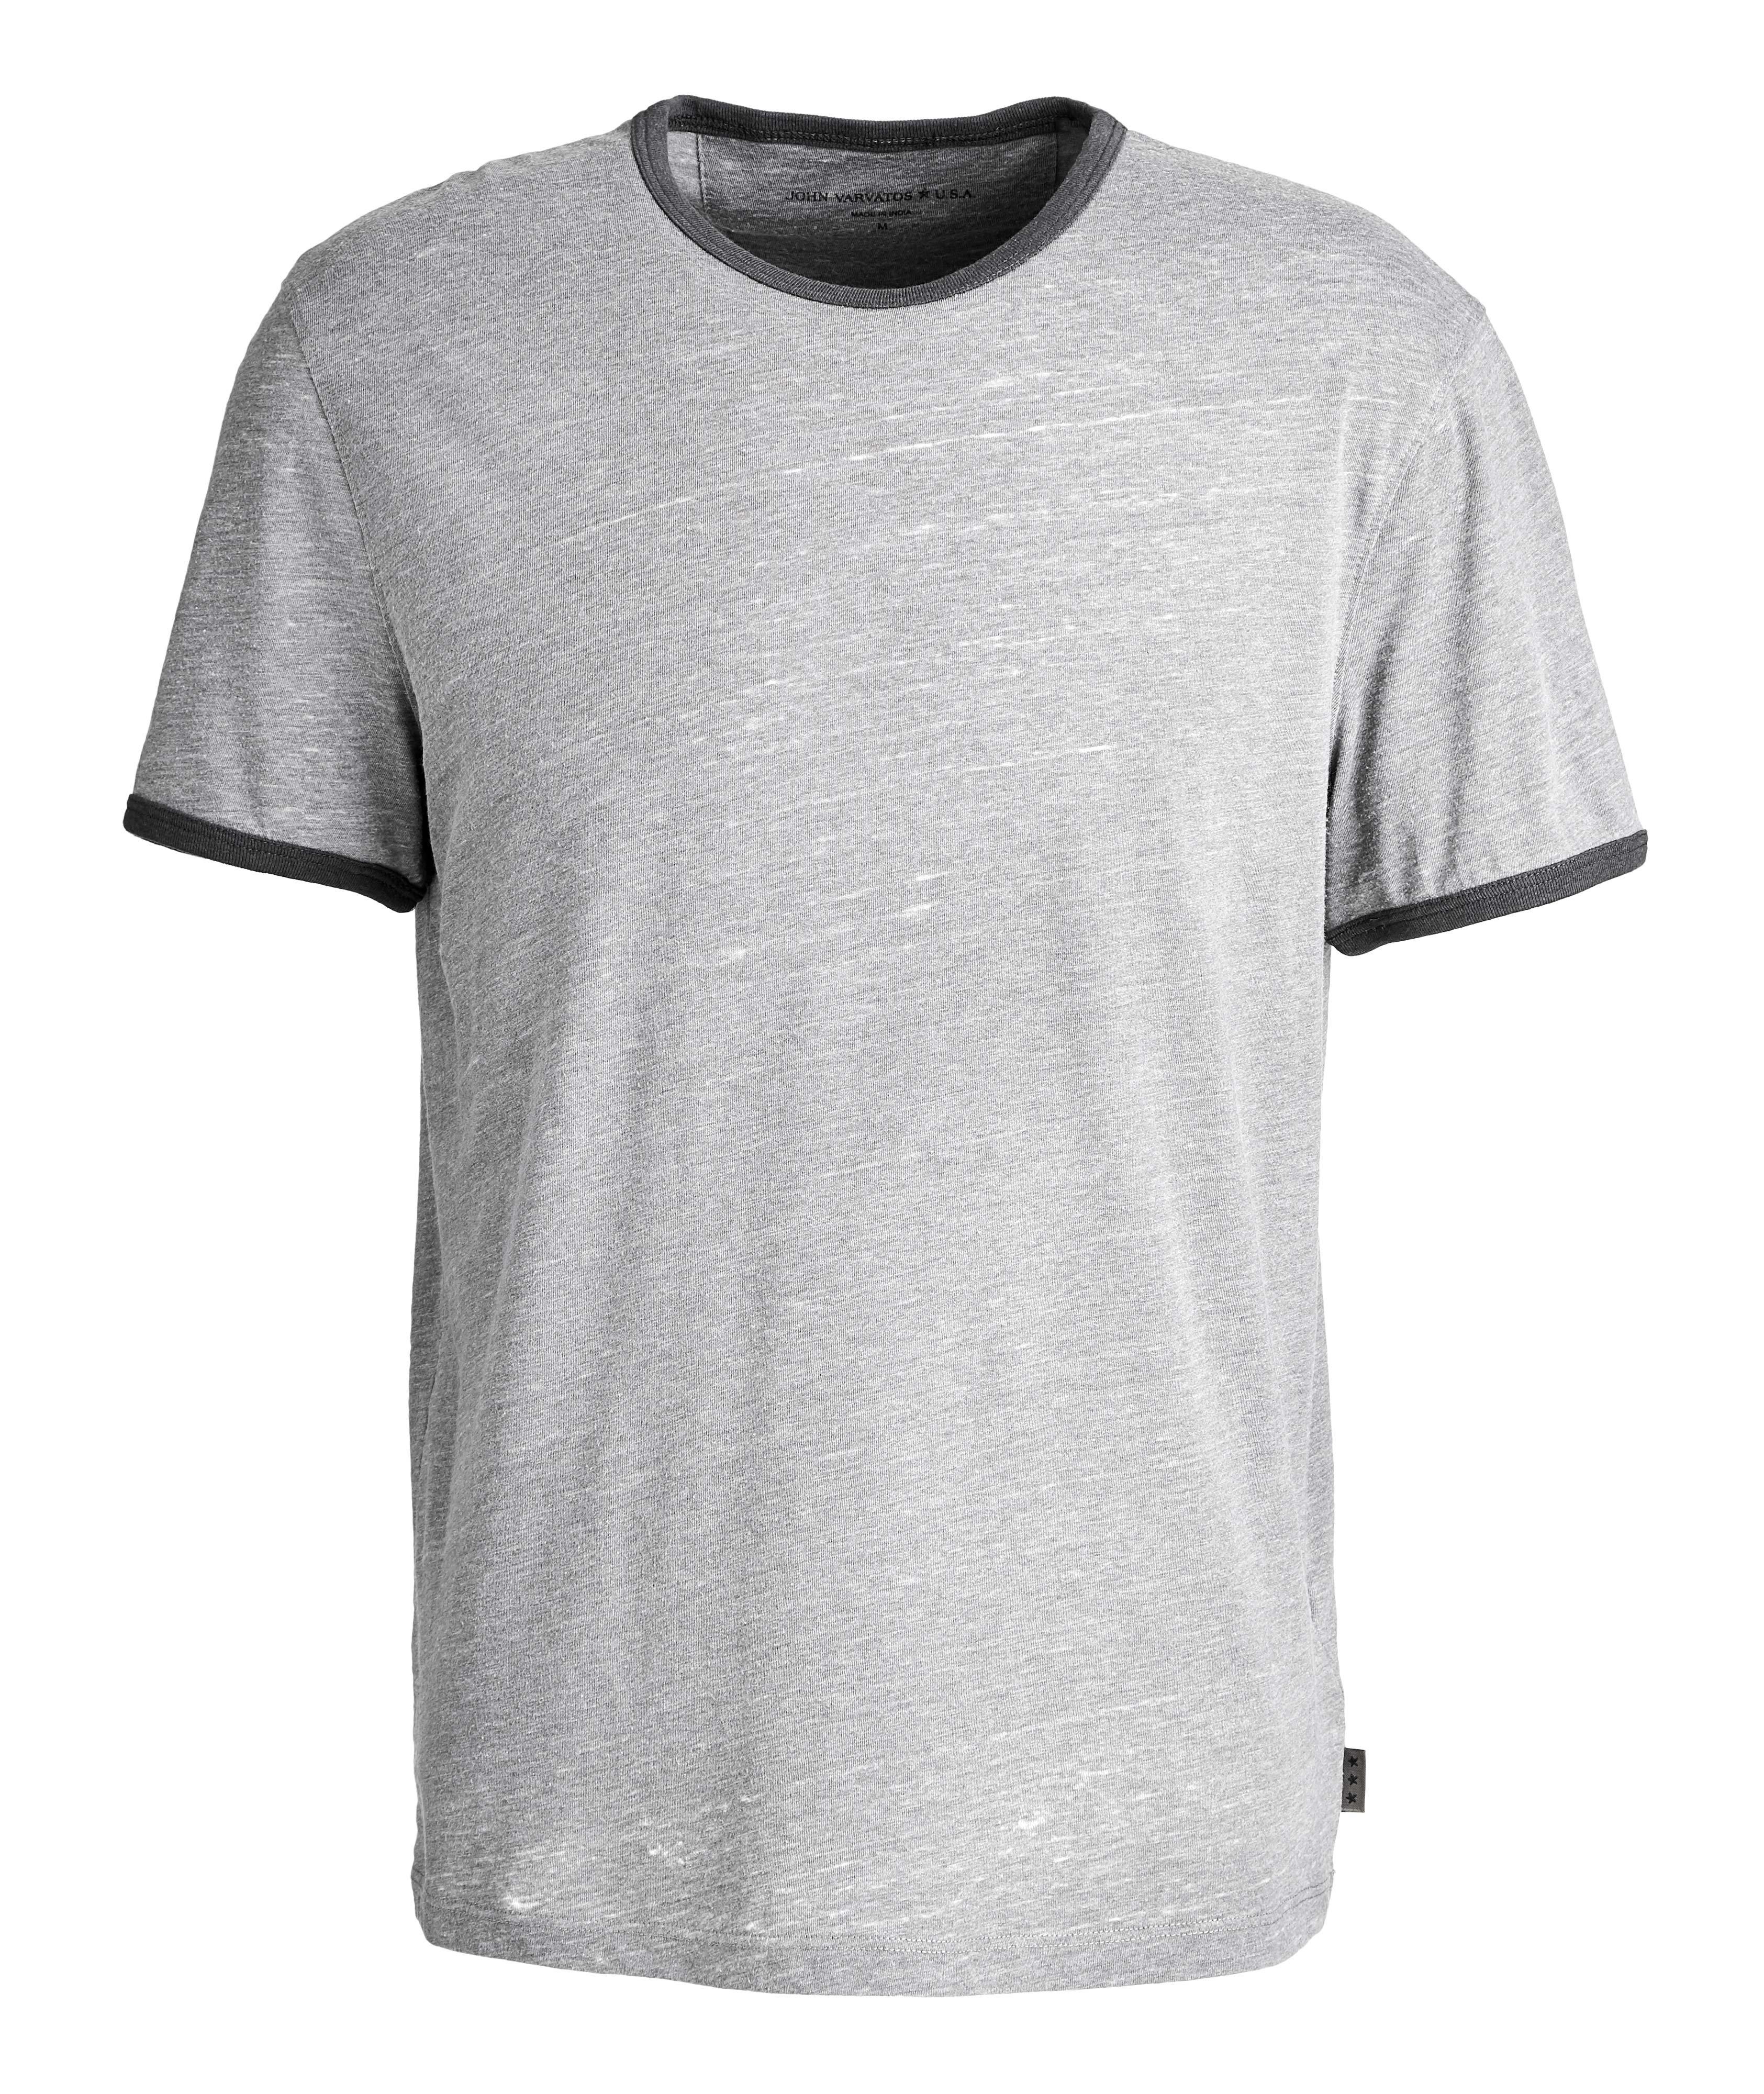 Burnout Cotton-Blend T-Shirt image 0